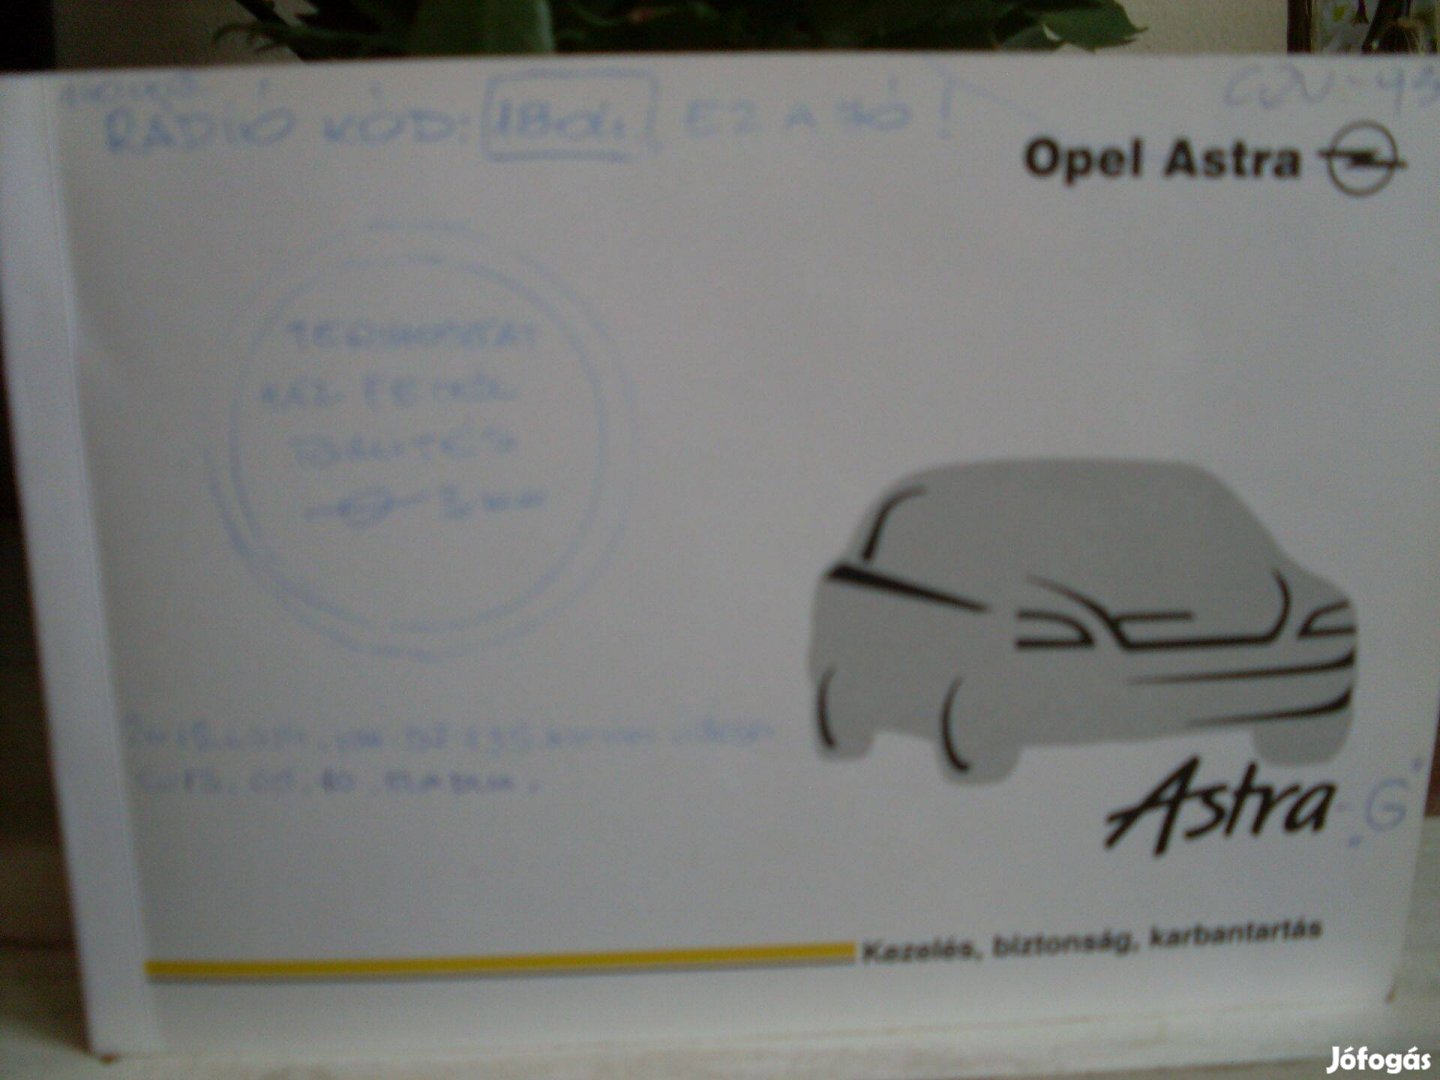 Opel használati könyv Astra G